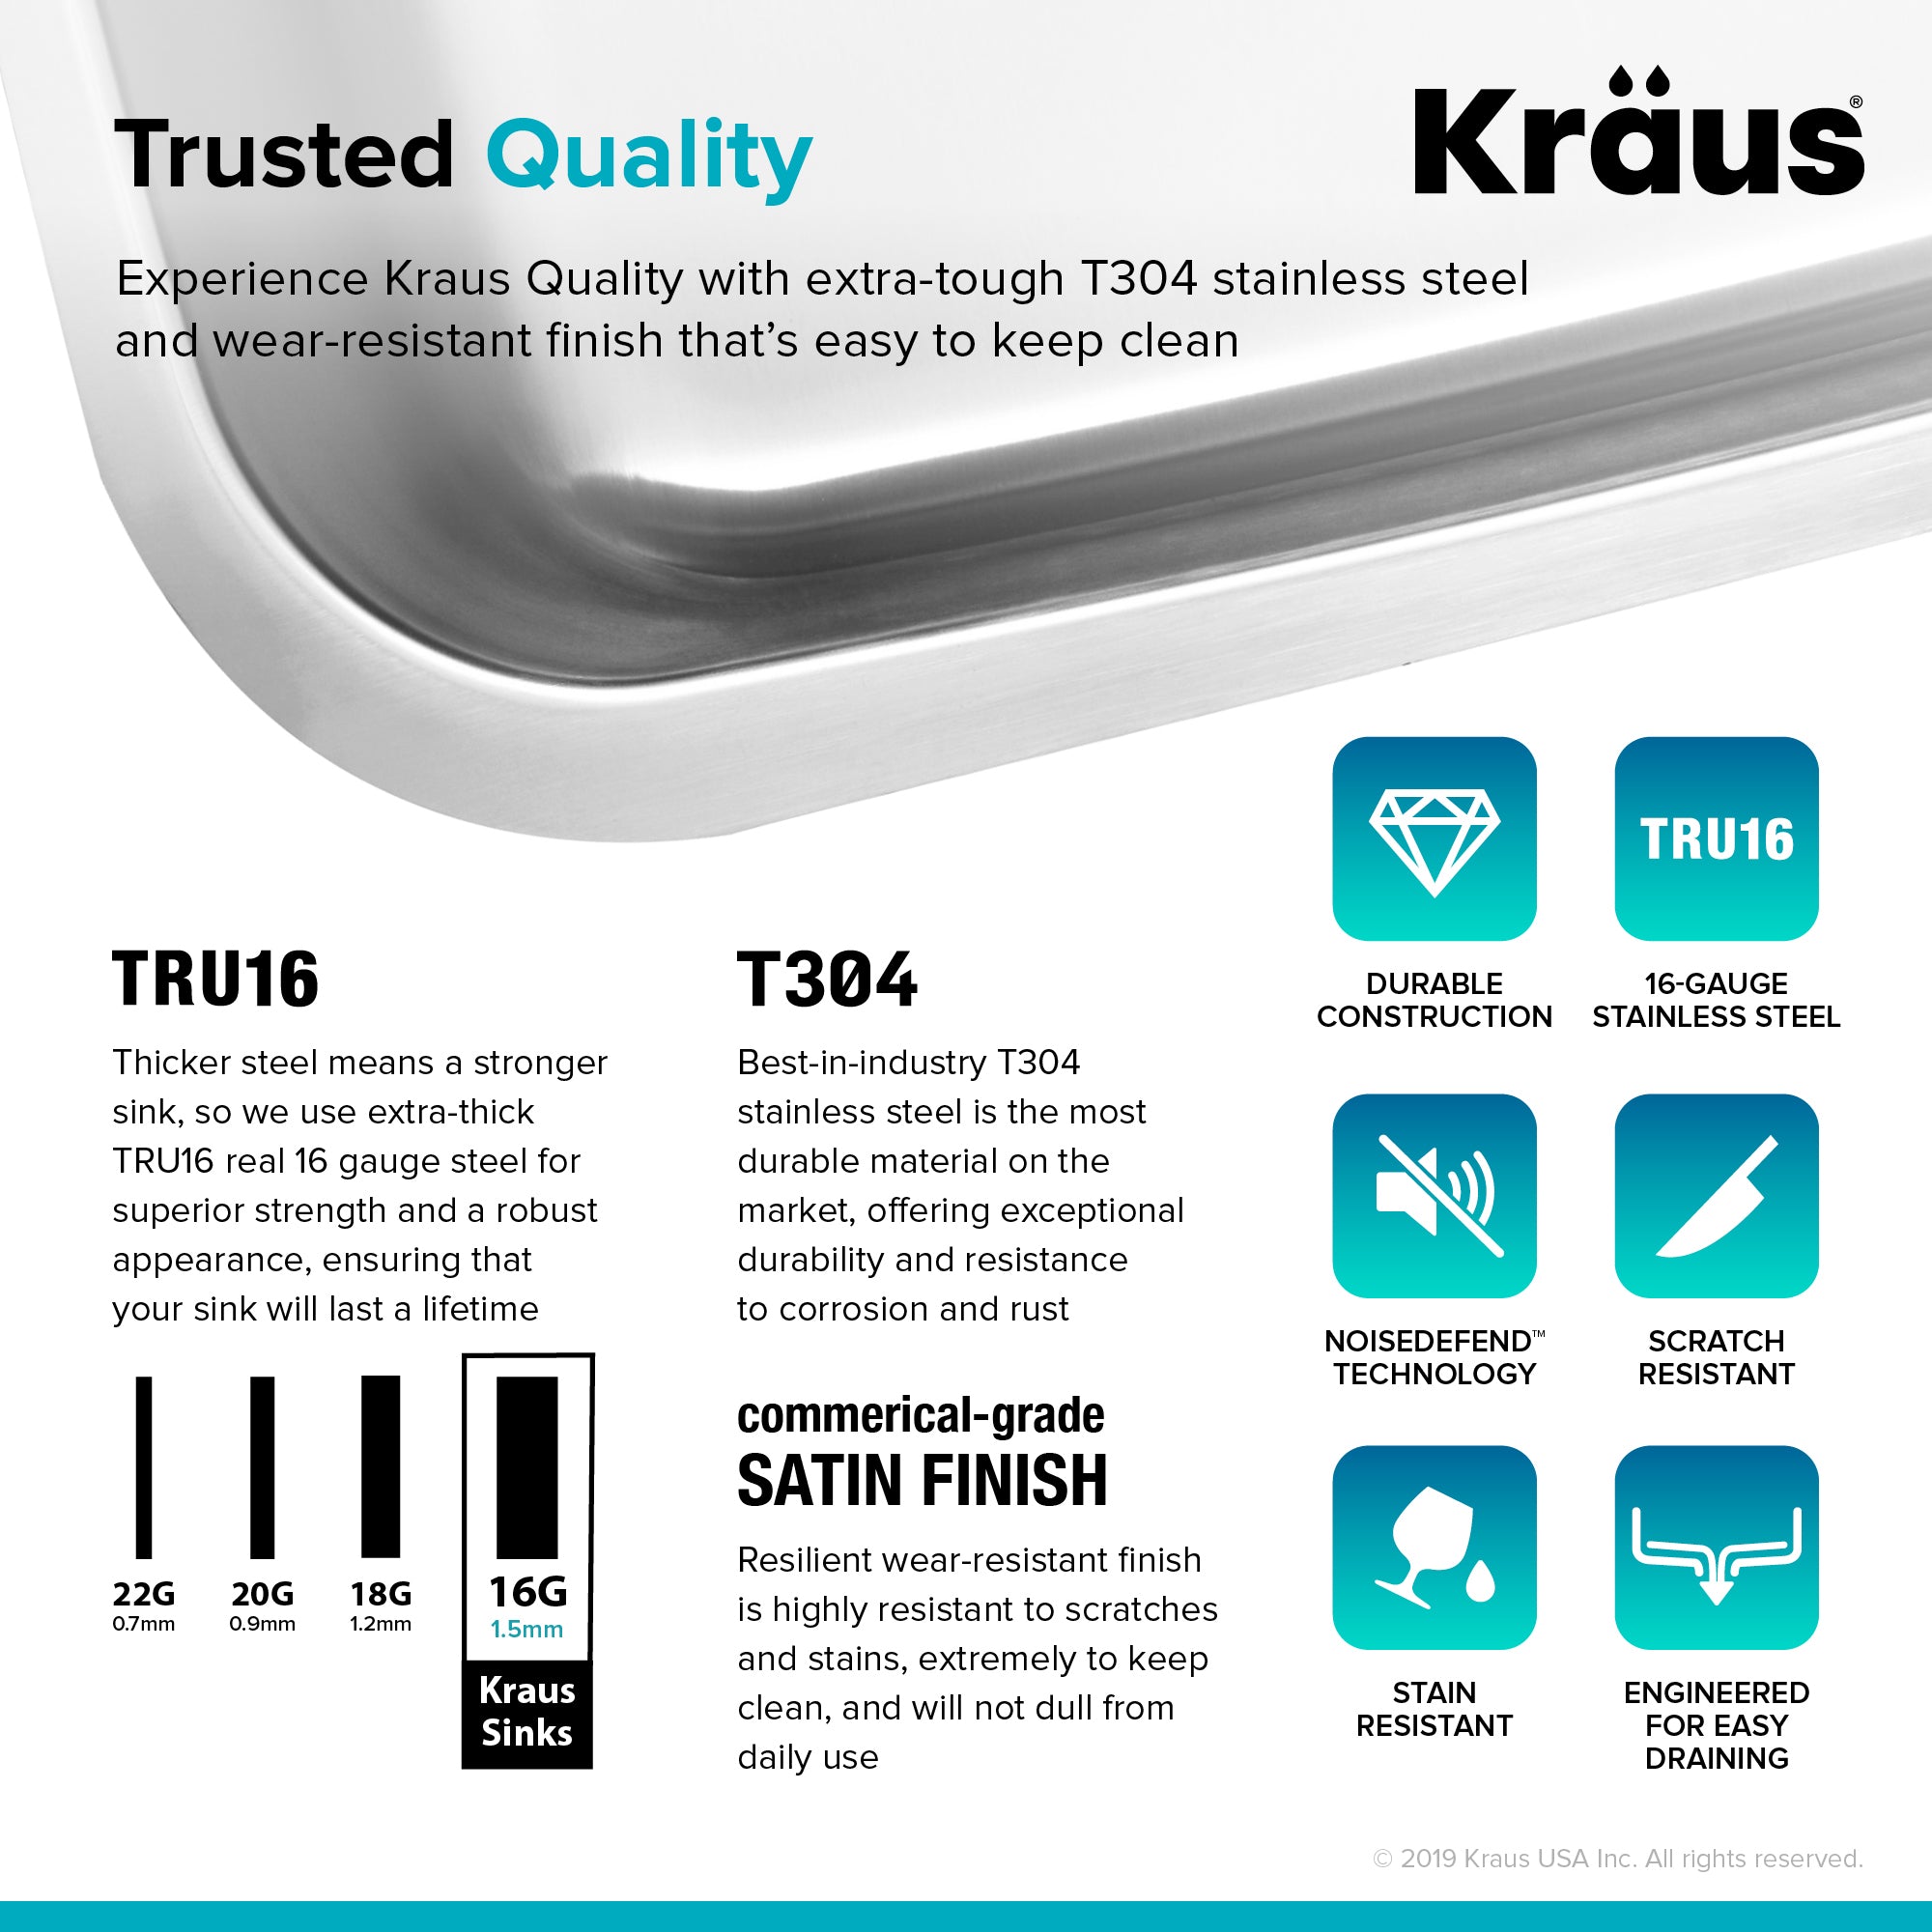 Kraus Premier 32 in. 16 Gauge Undermount 50/50 Double Bowl Stainless Kitchen Sink